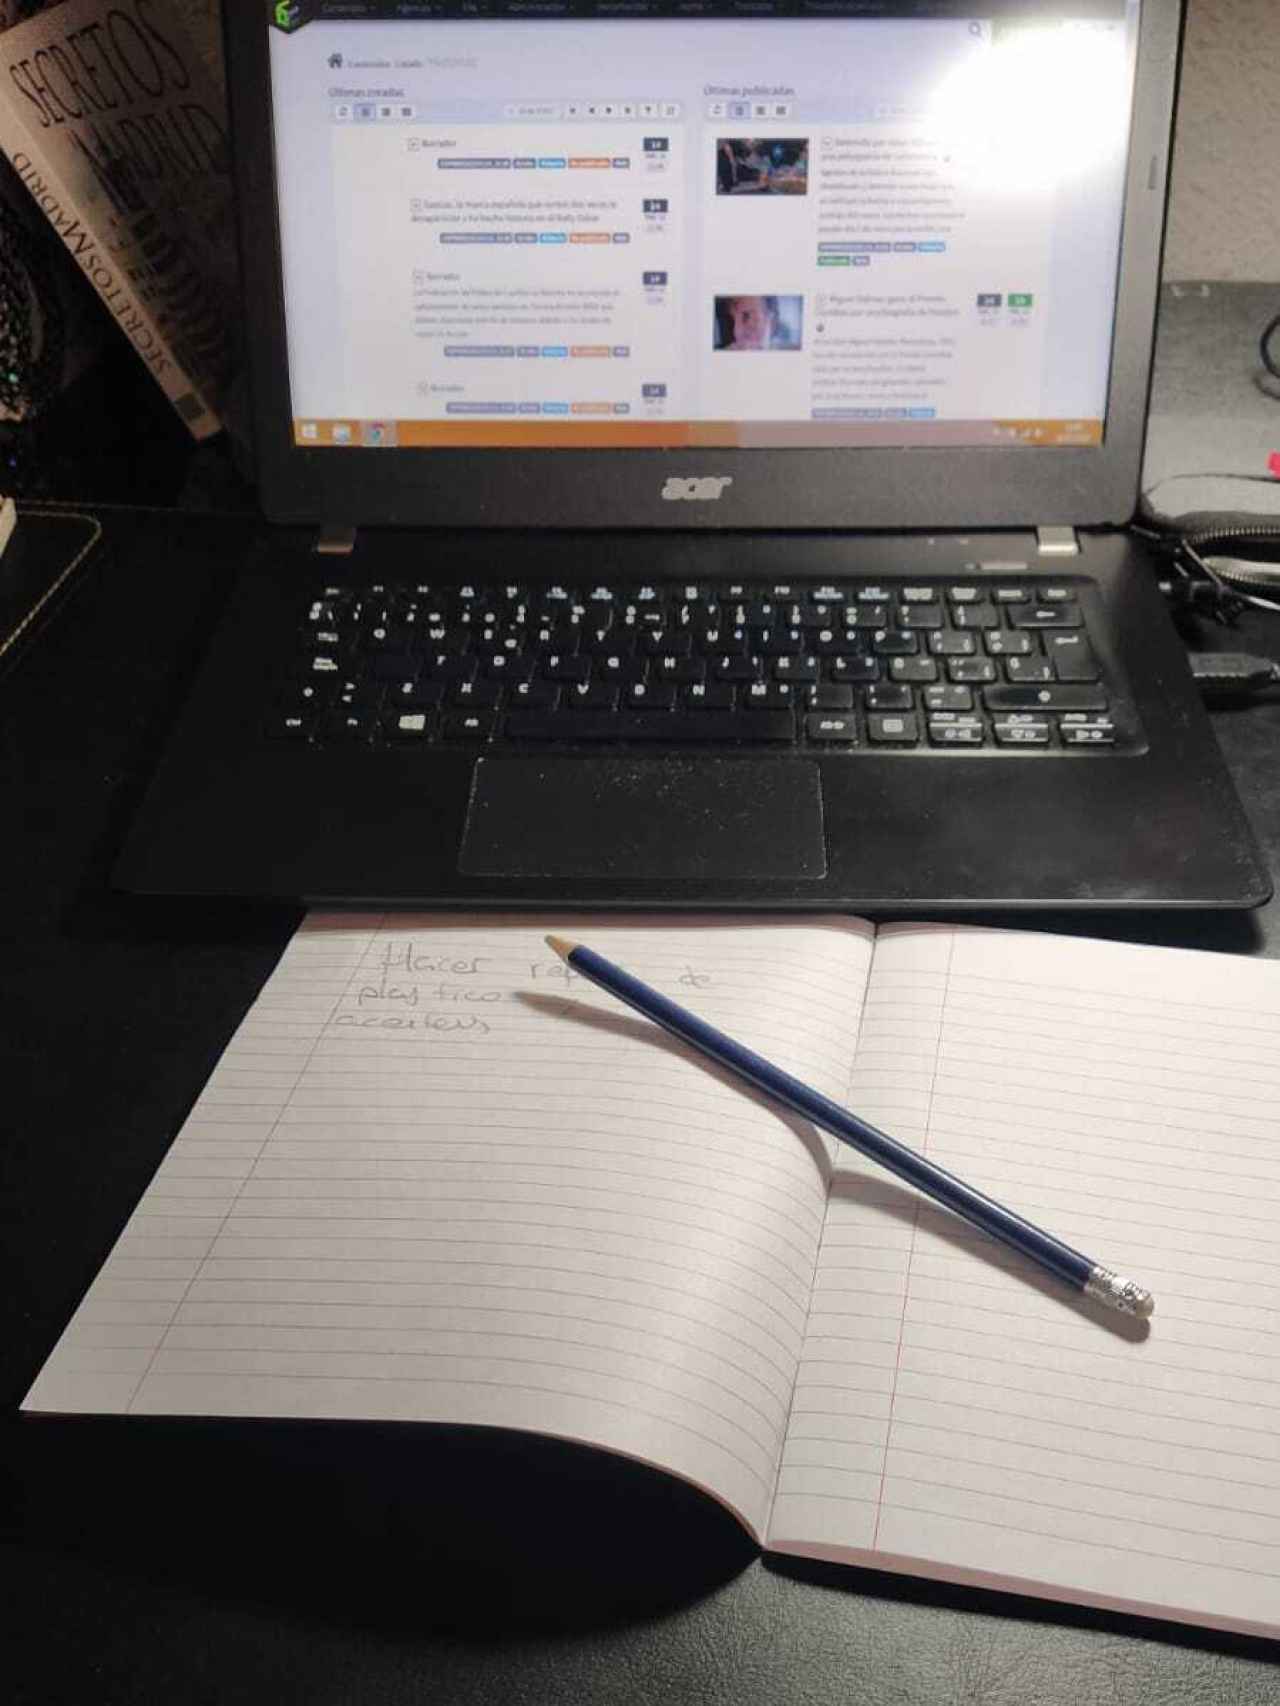 La libreta de papel y cartón y el lápiz empleados para apuntar. De fondo, el ordenador.